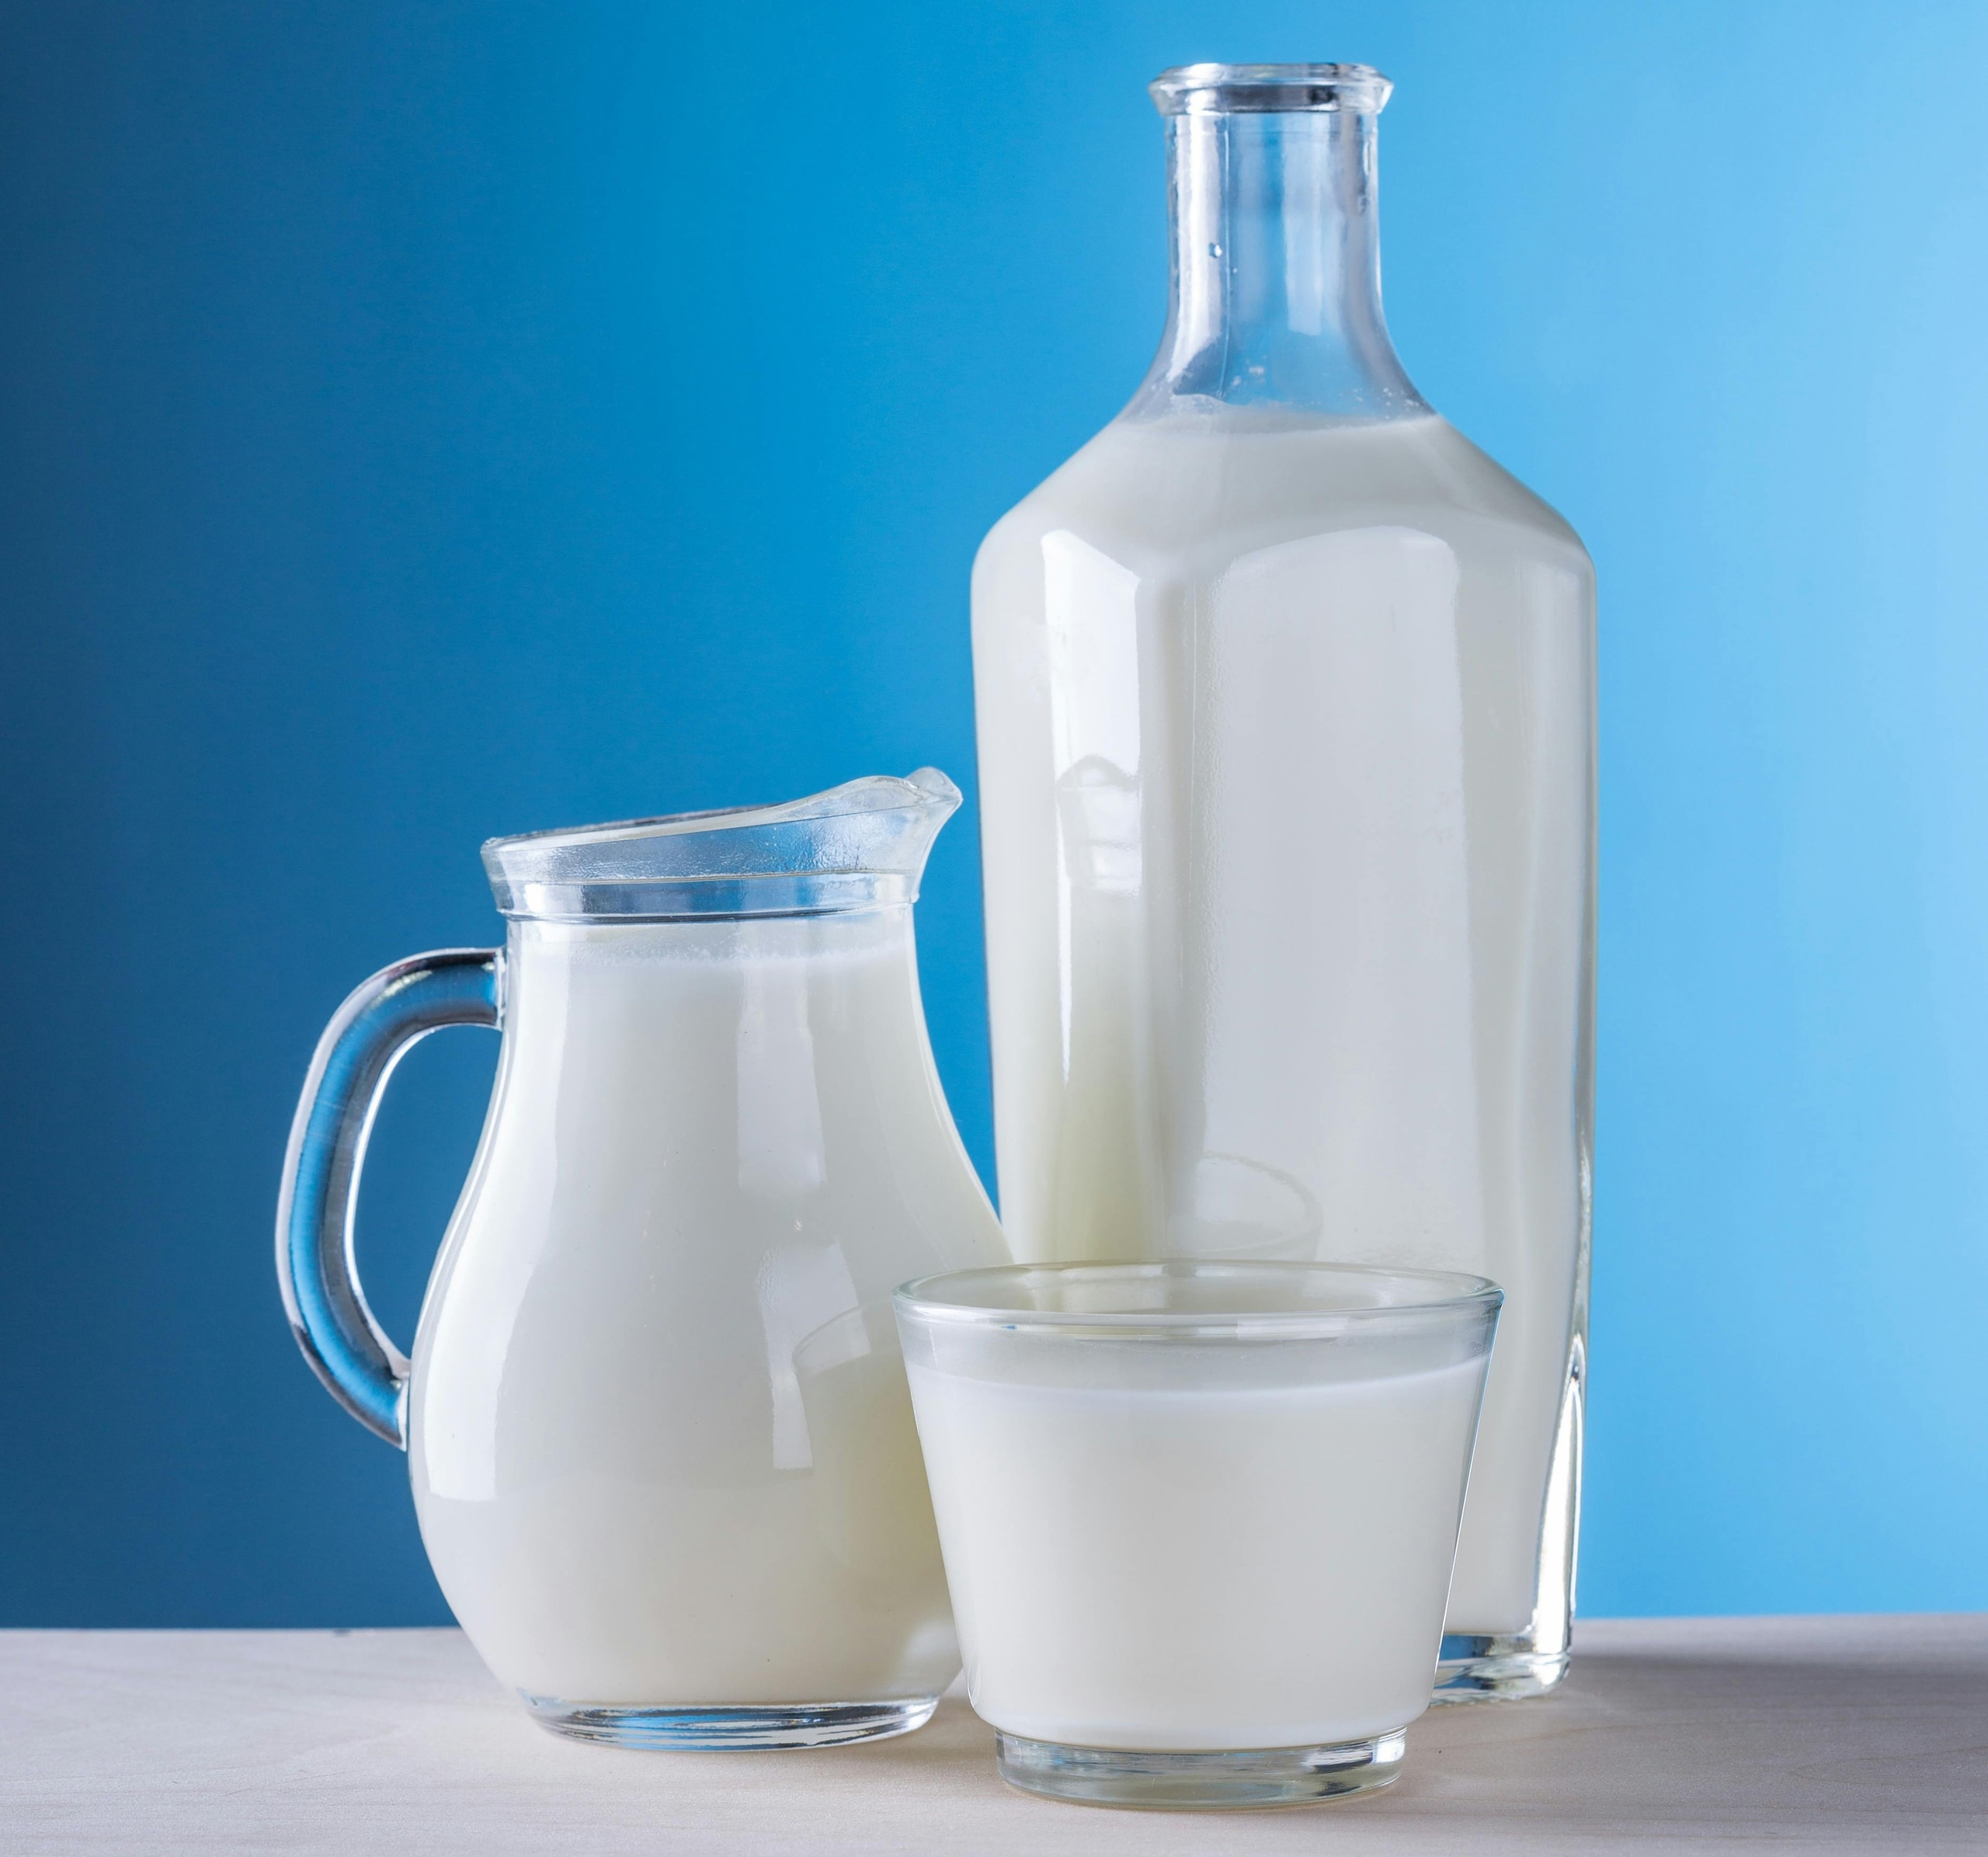 En cas d'indigestion, les gens devraient éviter le lait et les produits laitiers